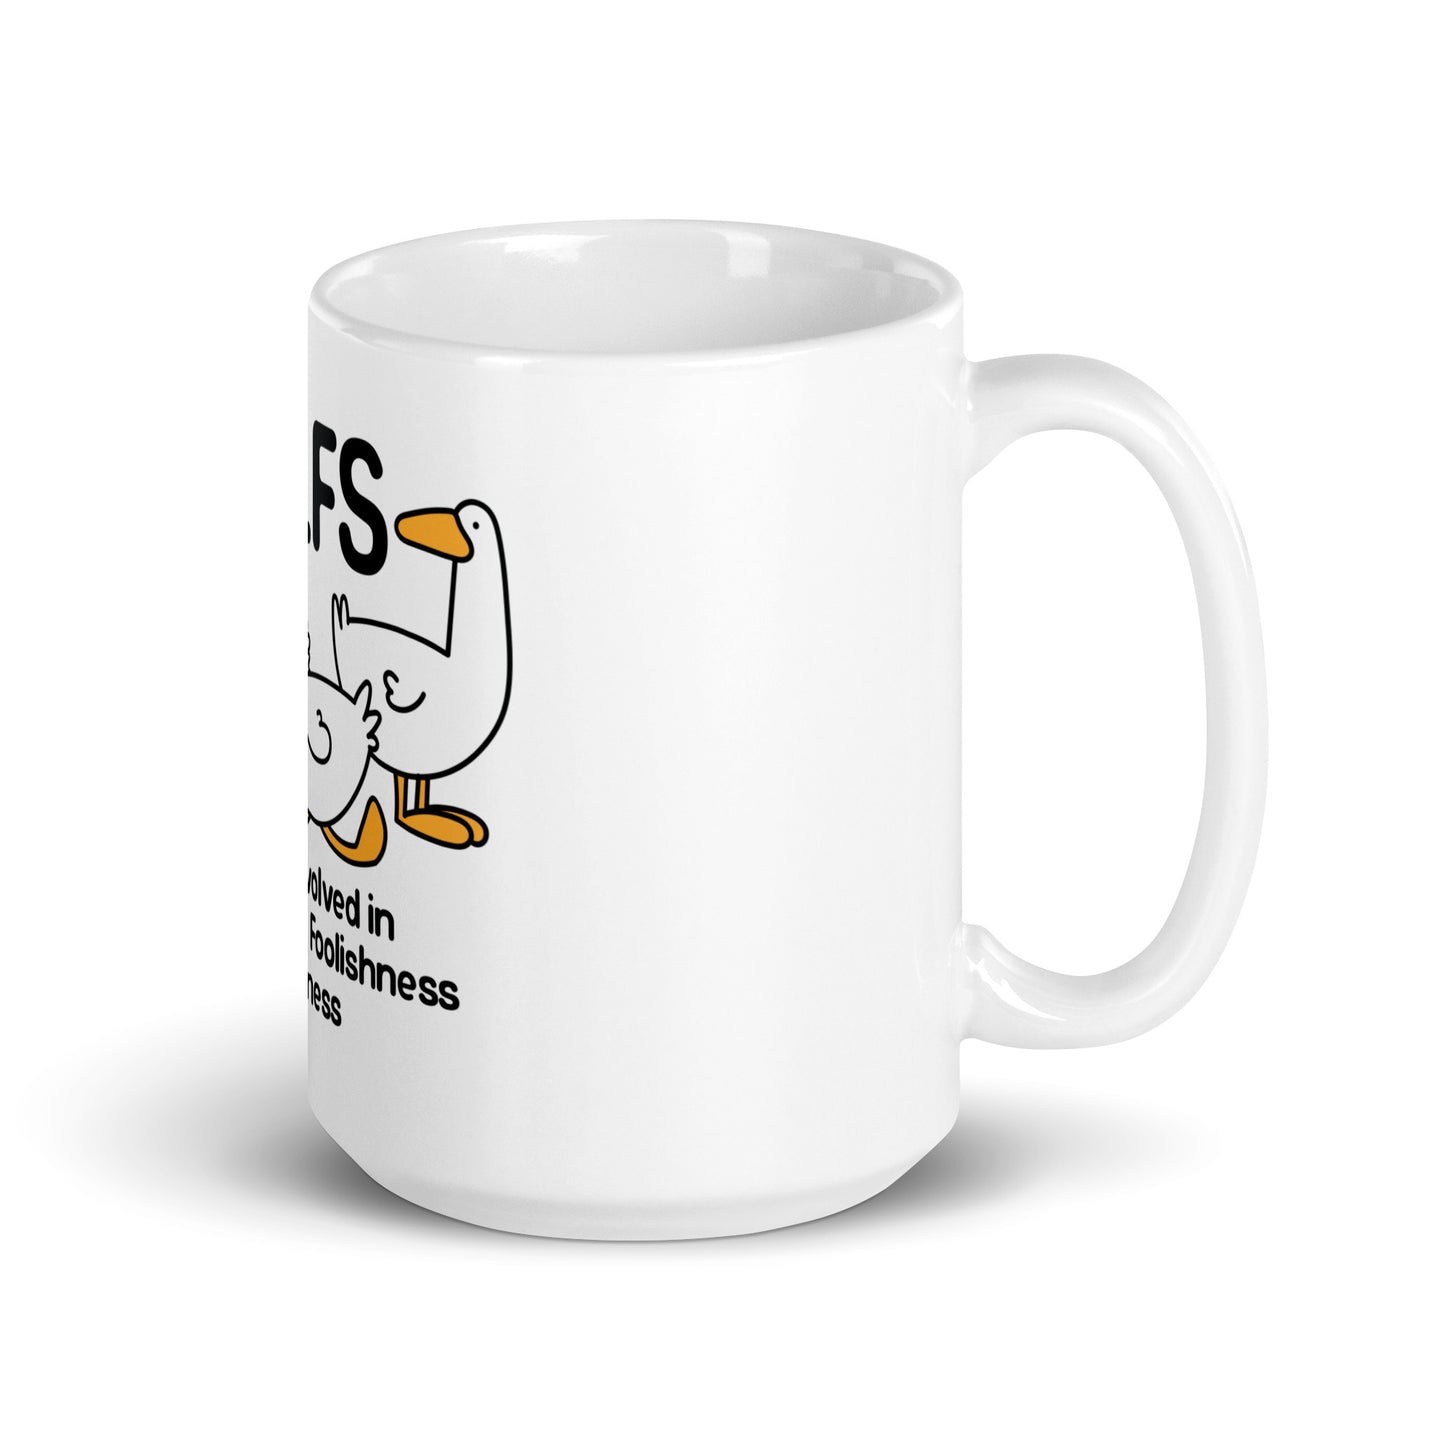 GILFS (Geese) mug